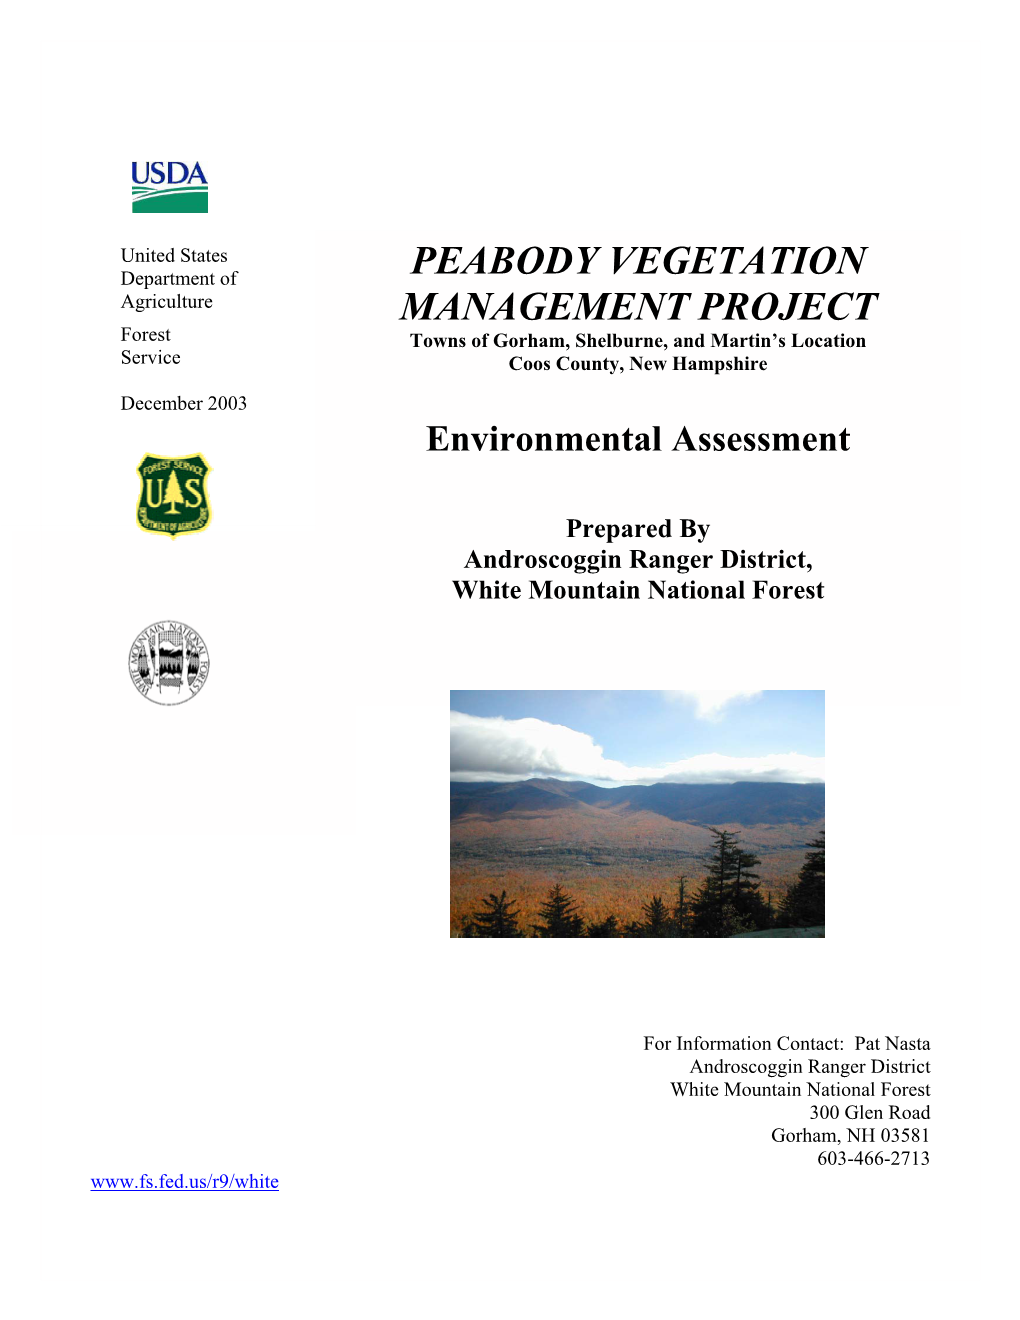 Peabody Vegetation Management Project EA - Summary